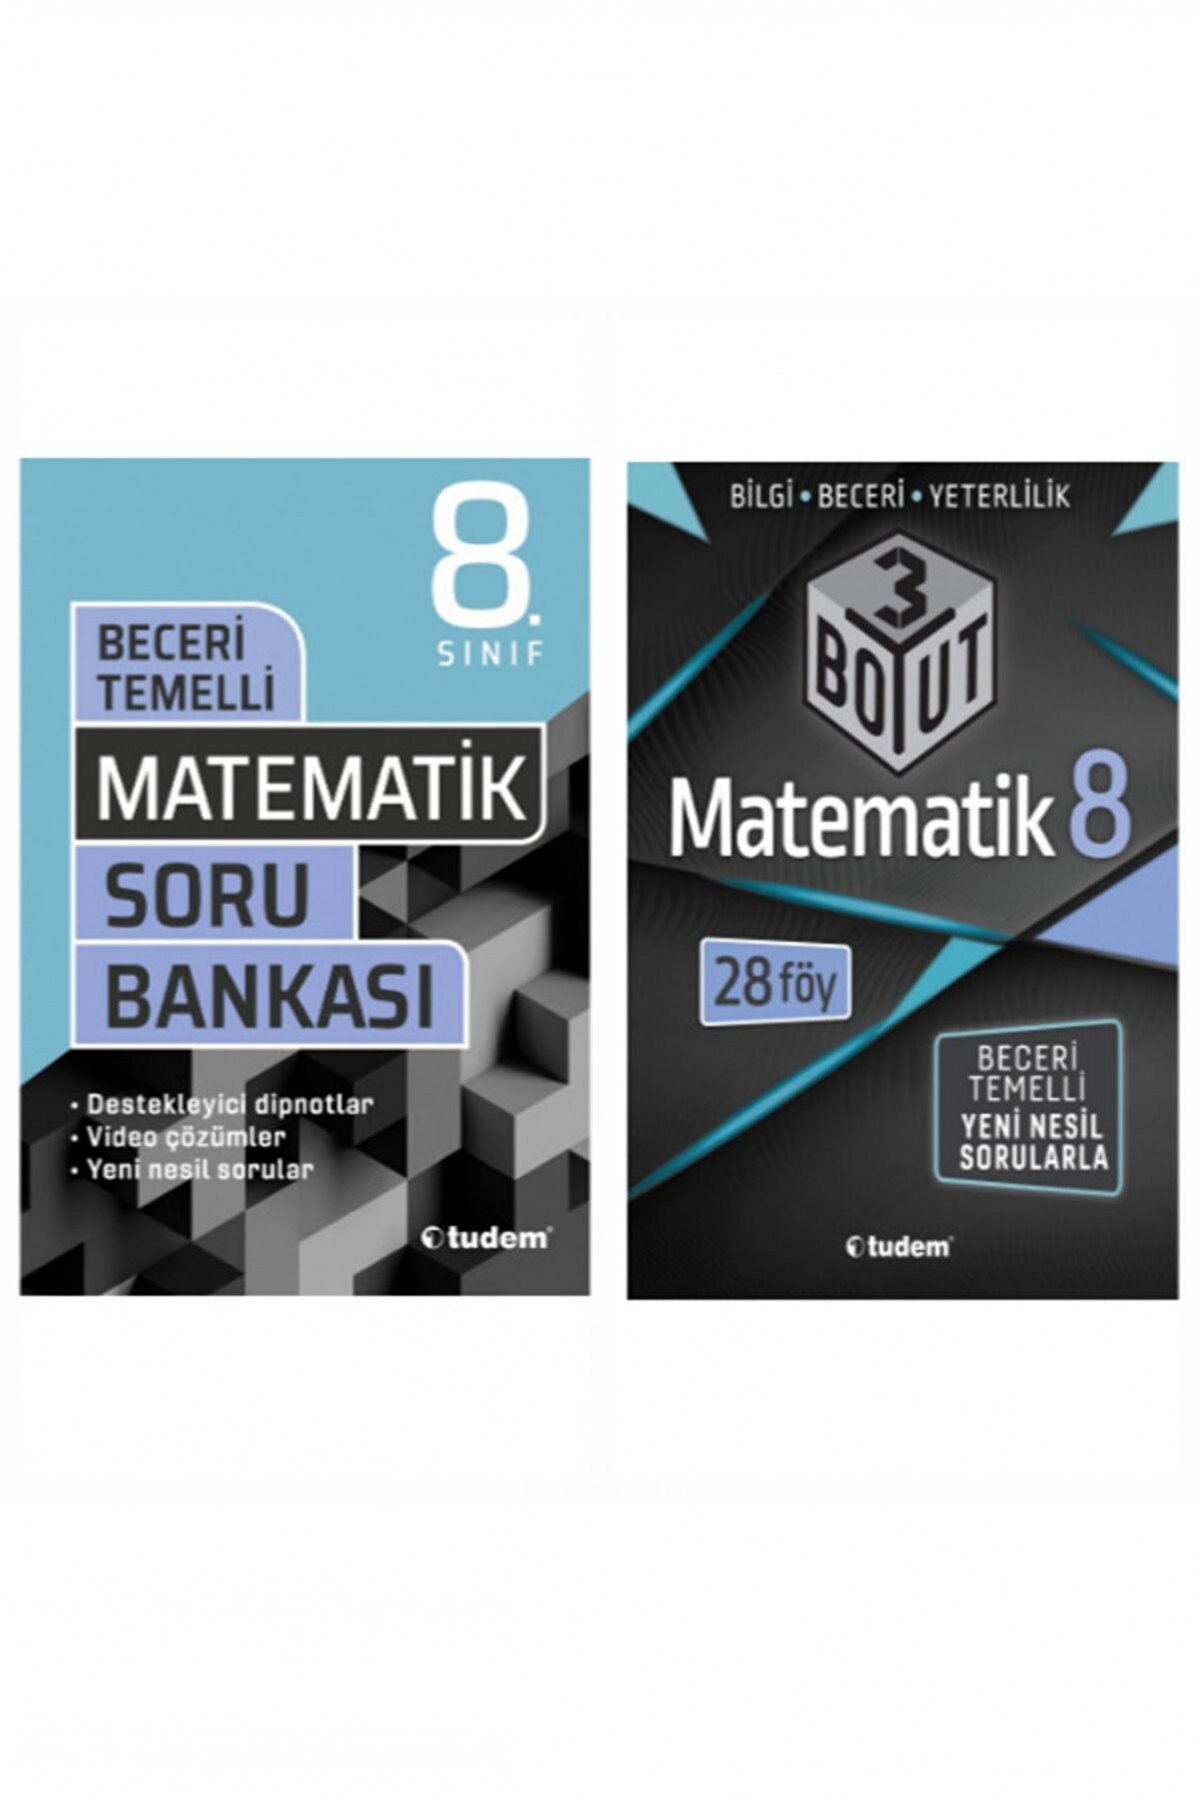 Tudem Yayınları 8.sınıf Matematik Soru Bankası&8.sınıf Matematik